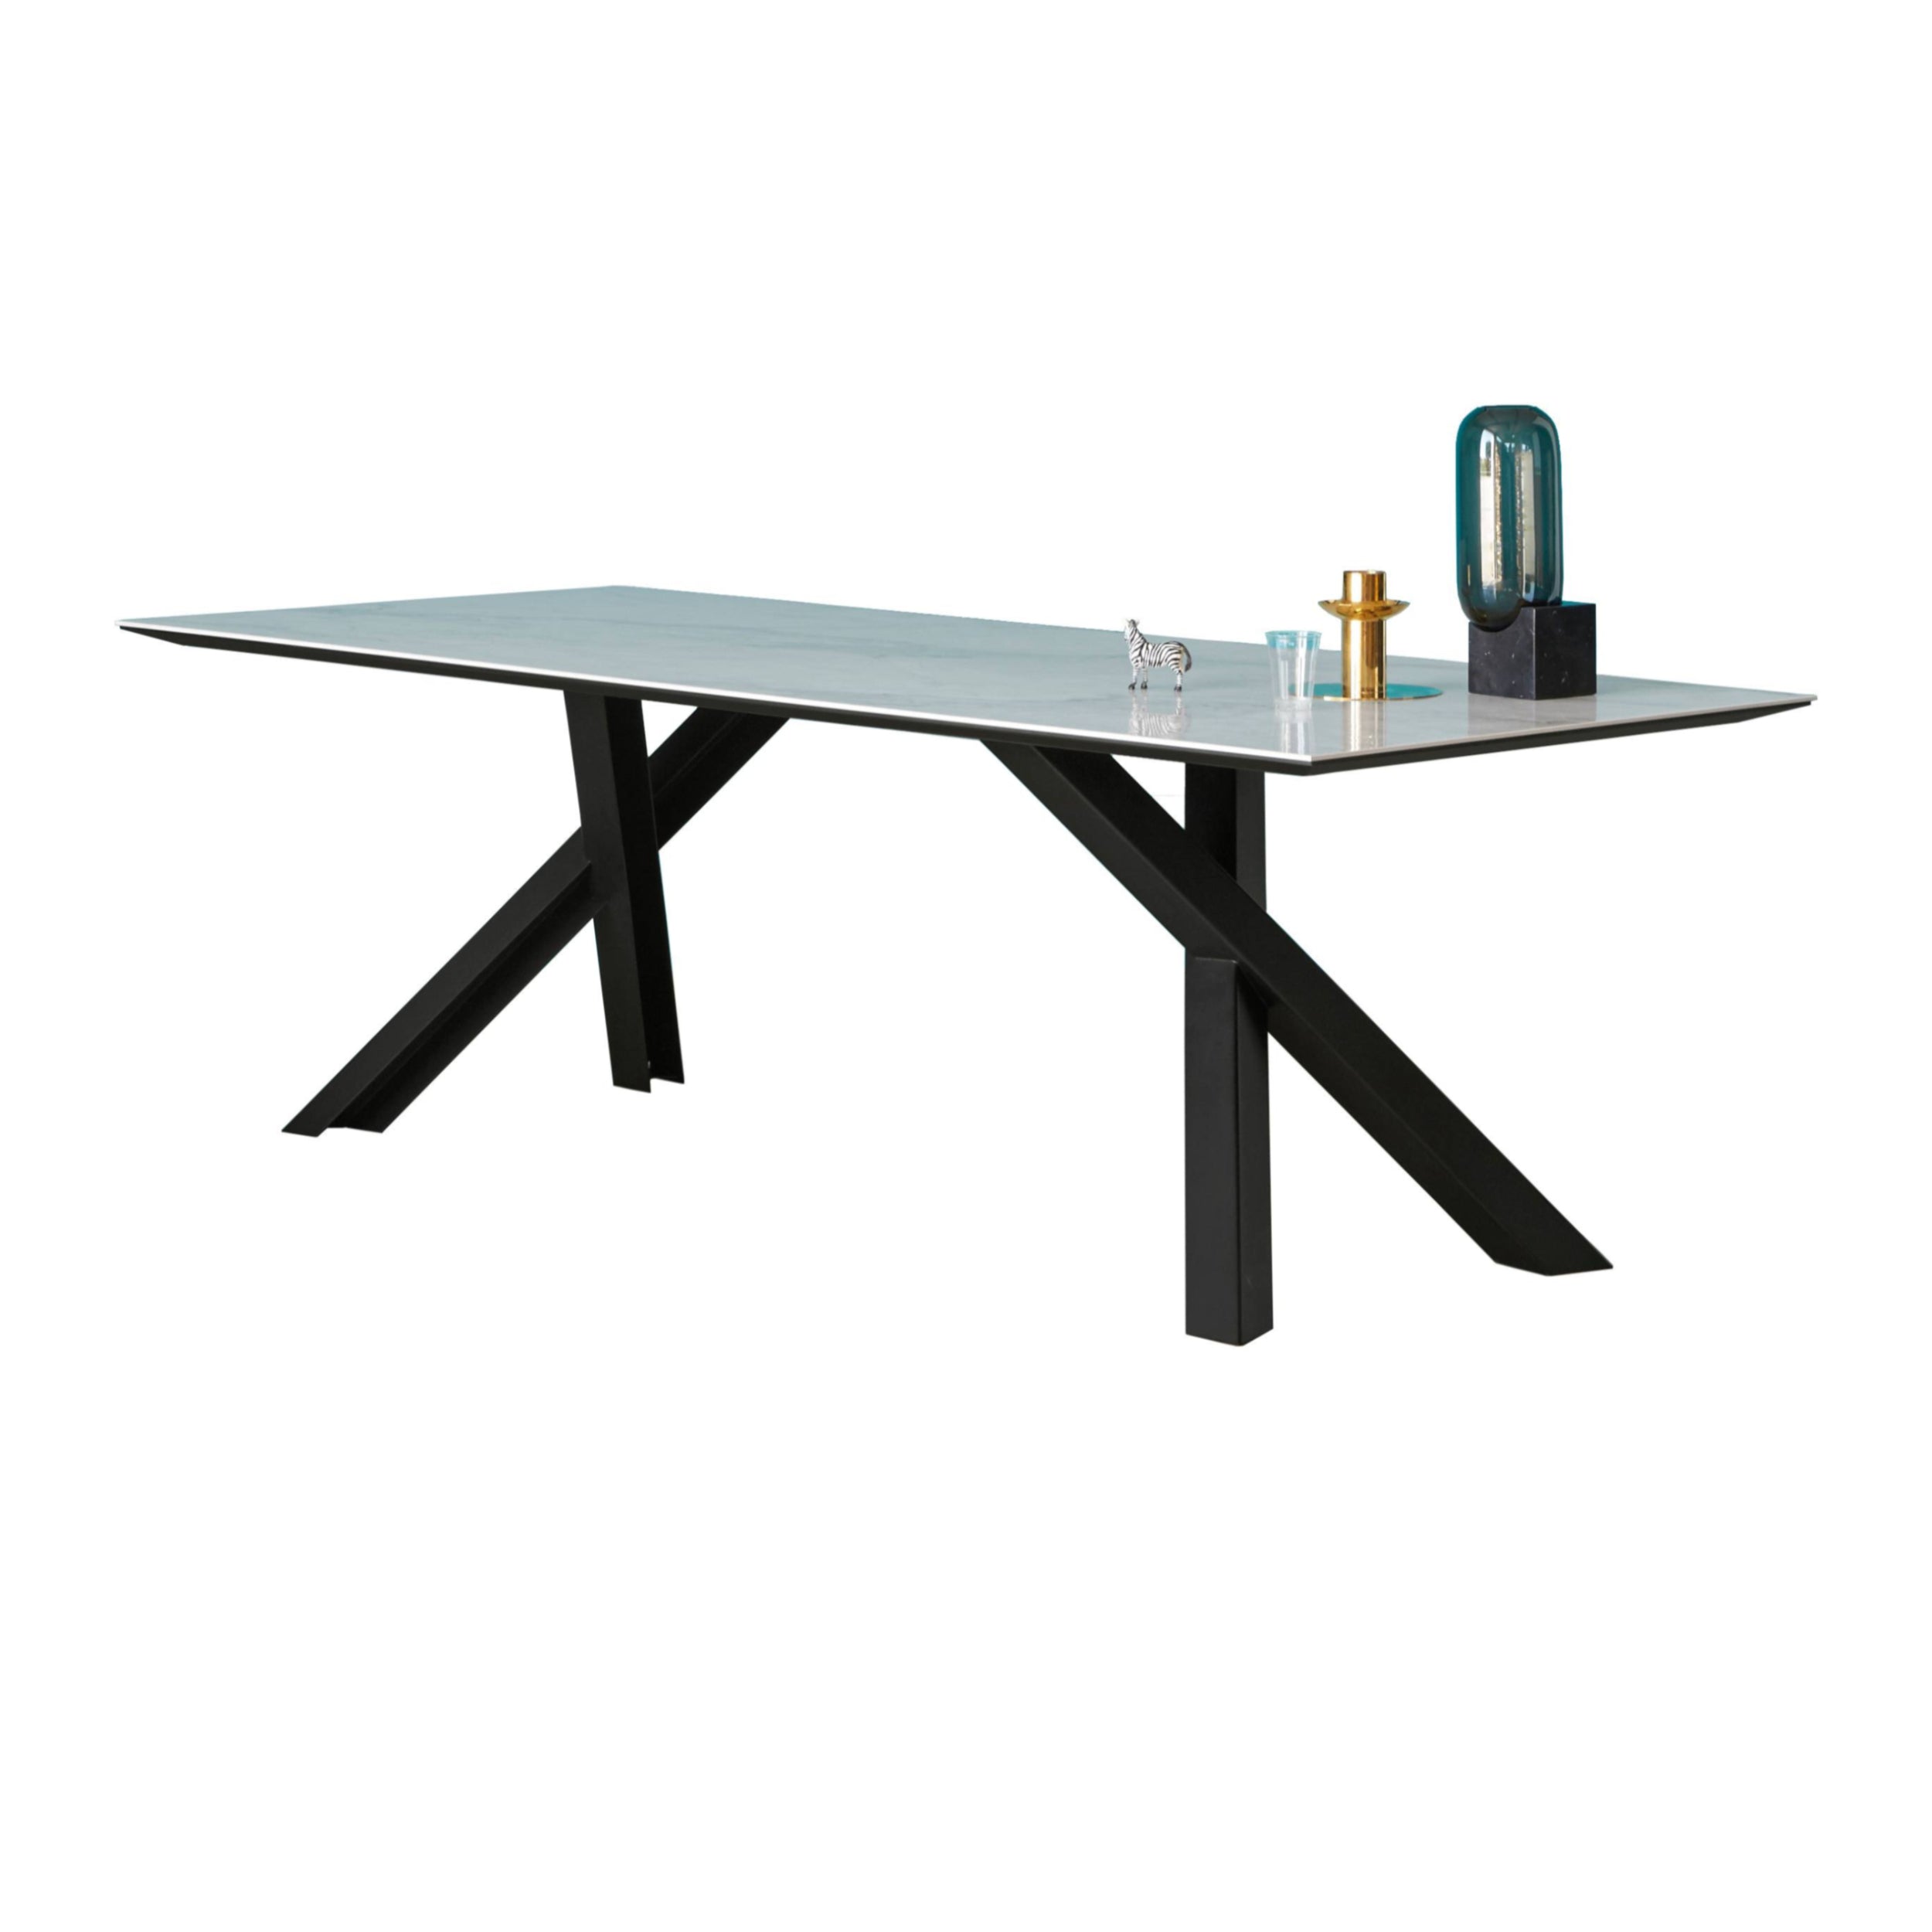 Gustave Dining Table: Medium + Statuario White Ceramic + Lacquered Black